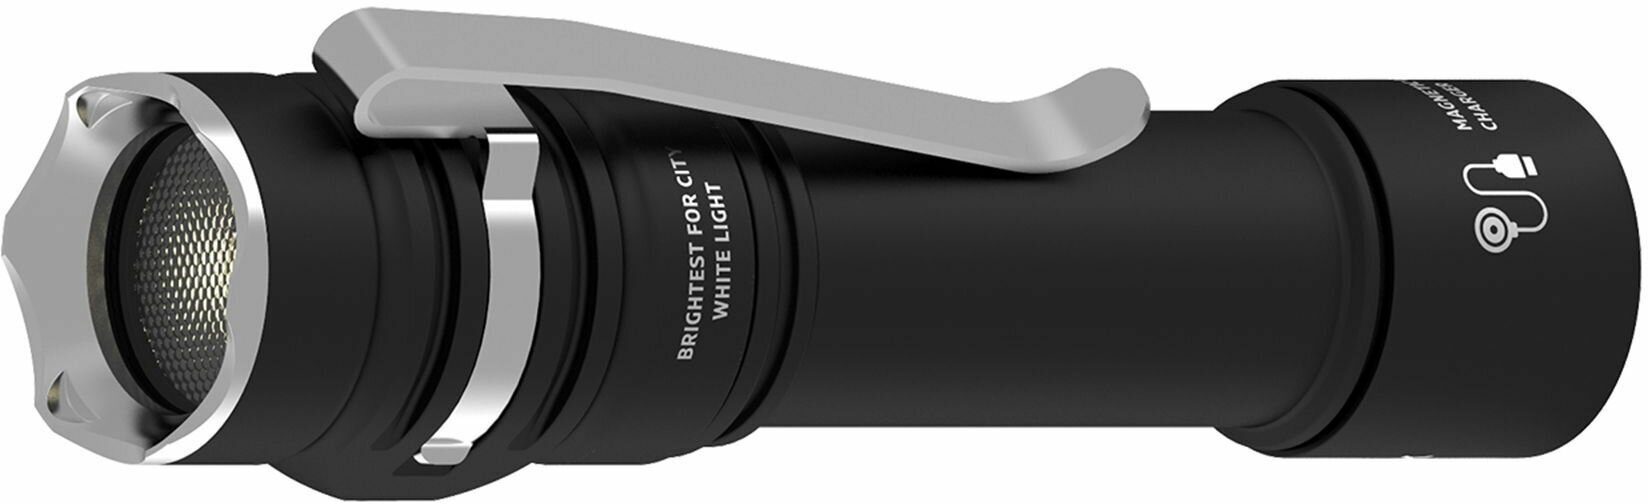 Карманный фонарь ARMYTEK Prime C2 Pro Magnet USB, черный / белый [f08101c] - фото №2